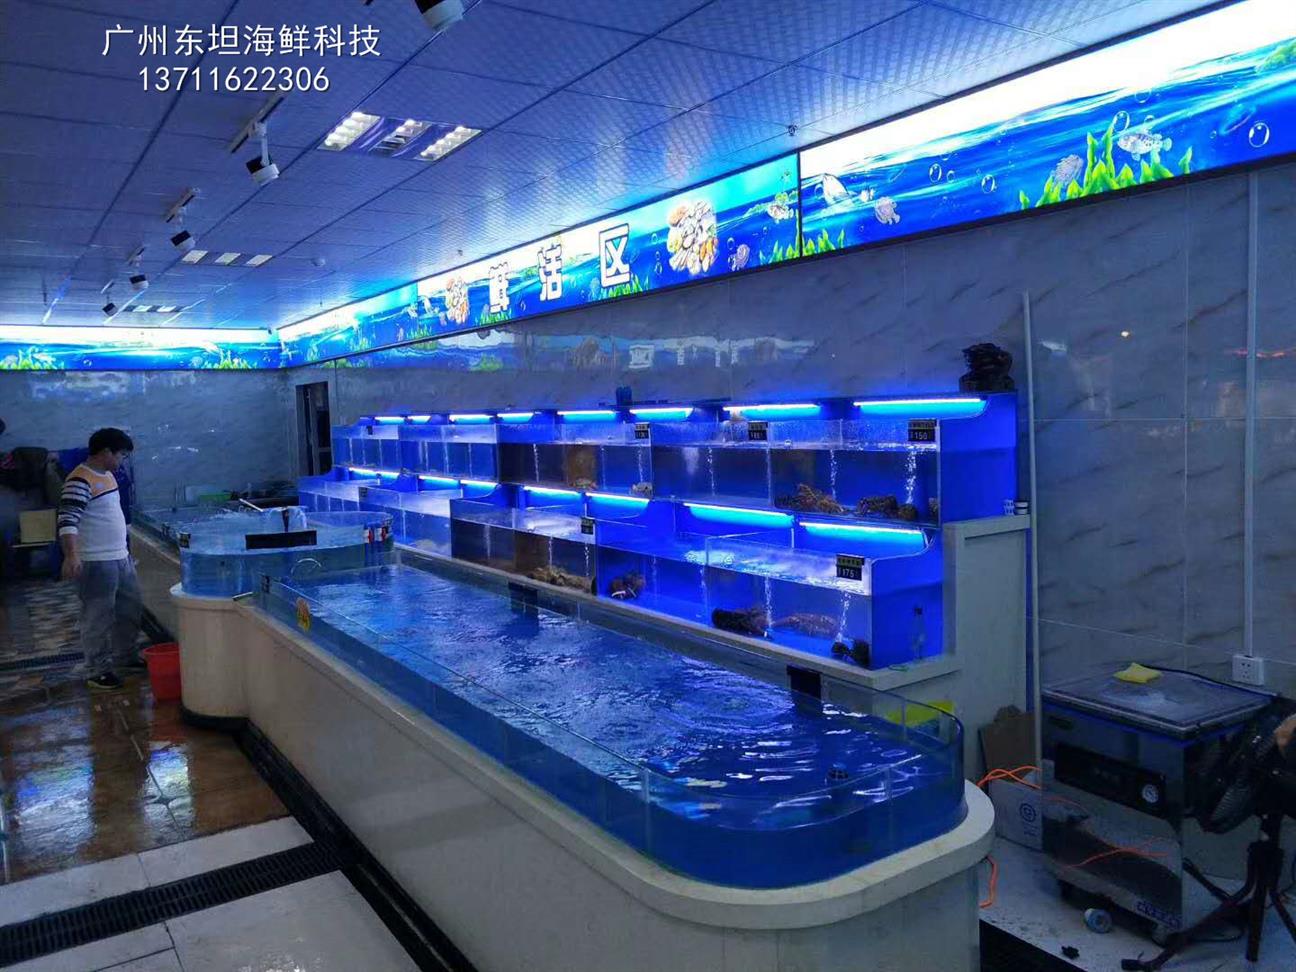 未来广州市东坦海鲜鱼池定做有限公司将以全新服务模式,系列计划将